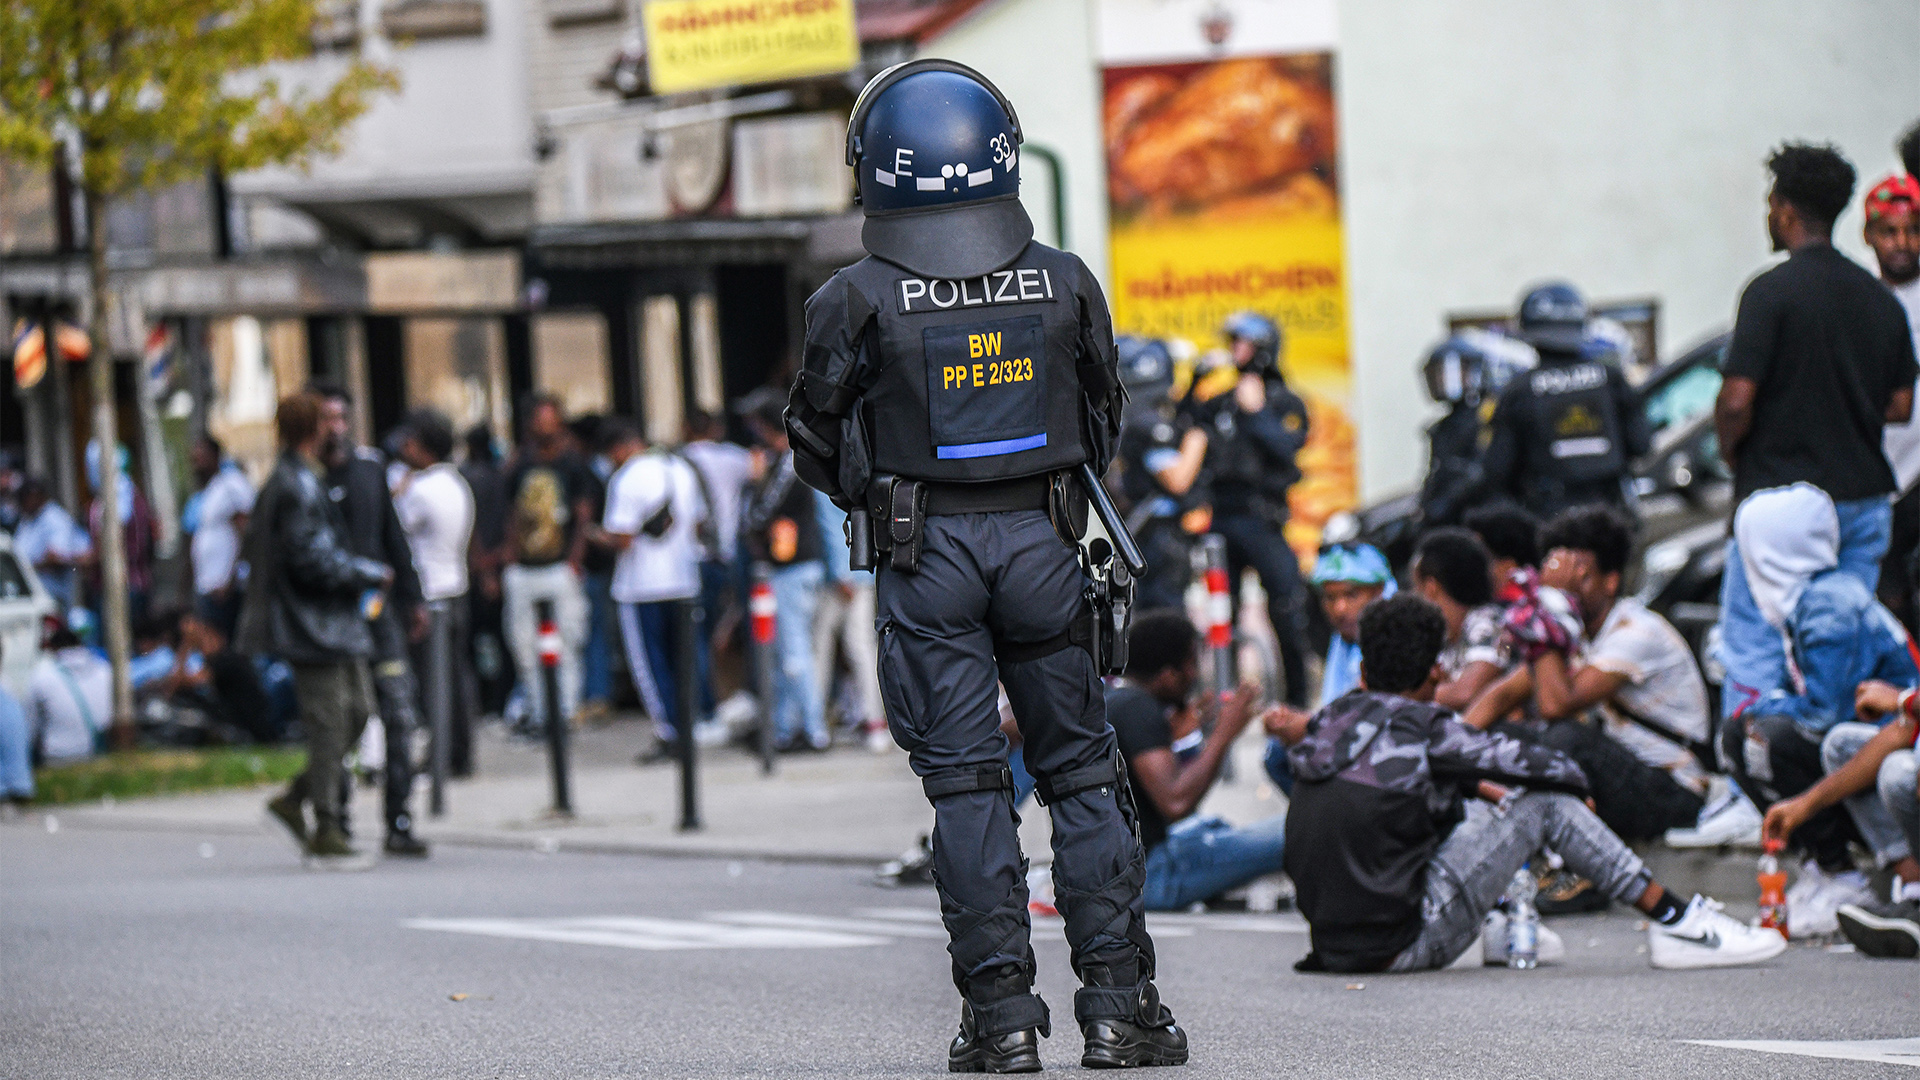 Polizisten stehen zwischen Gruppen von Menschen auf der Straße.